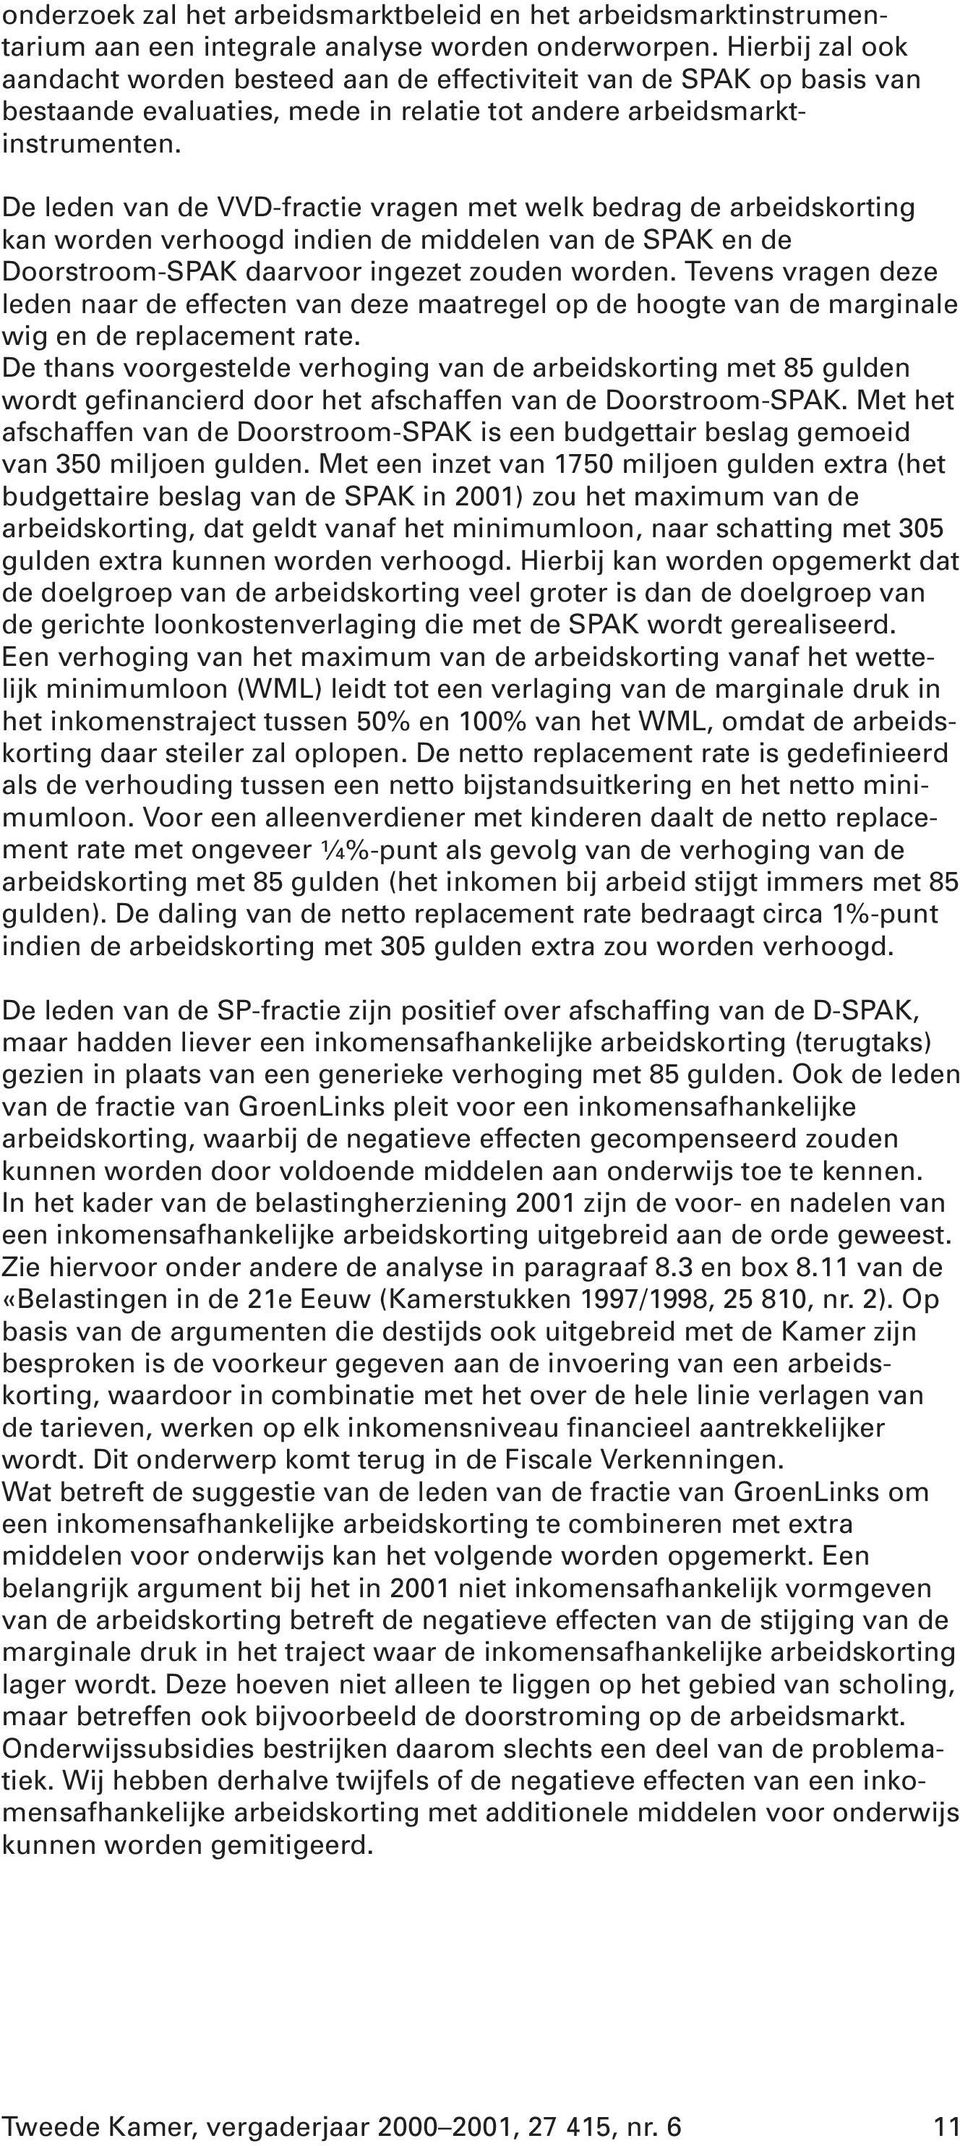 De leden van de VVD-fractie vragen met welk bedrag de arbeidskorting kan worden verhoogd indien de middelen van de SPAK en de Doorstroom-SPAK daarvoor ingezet zouden worden.